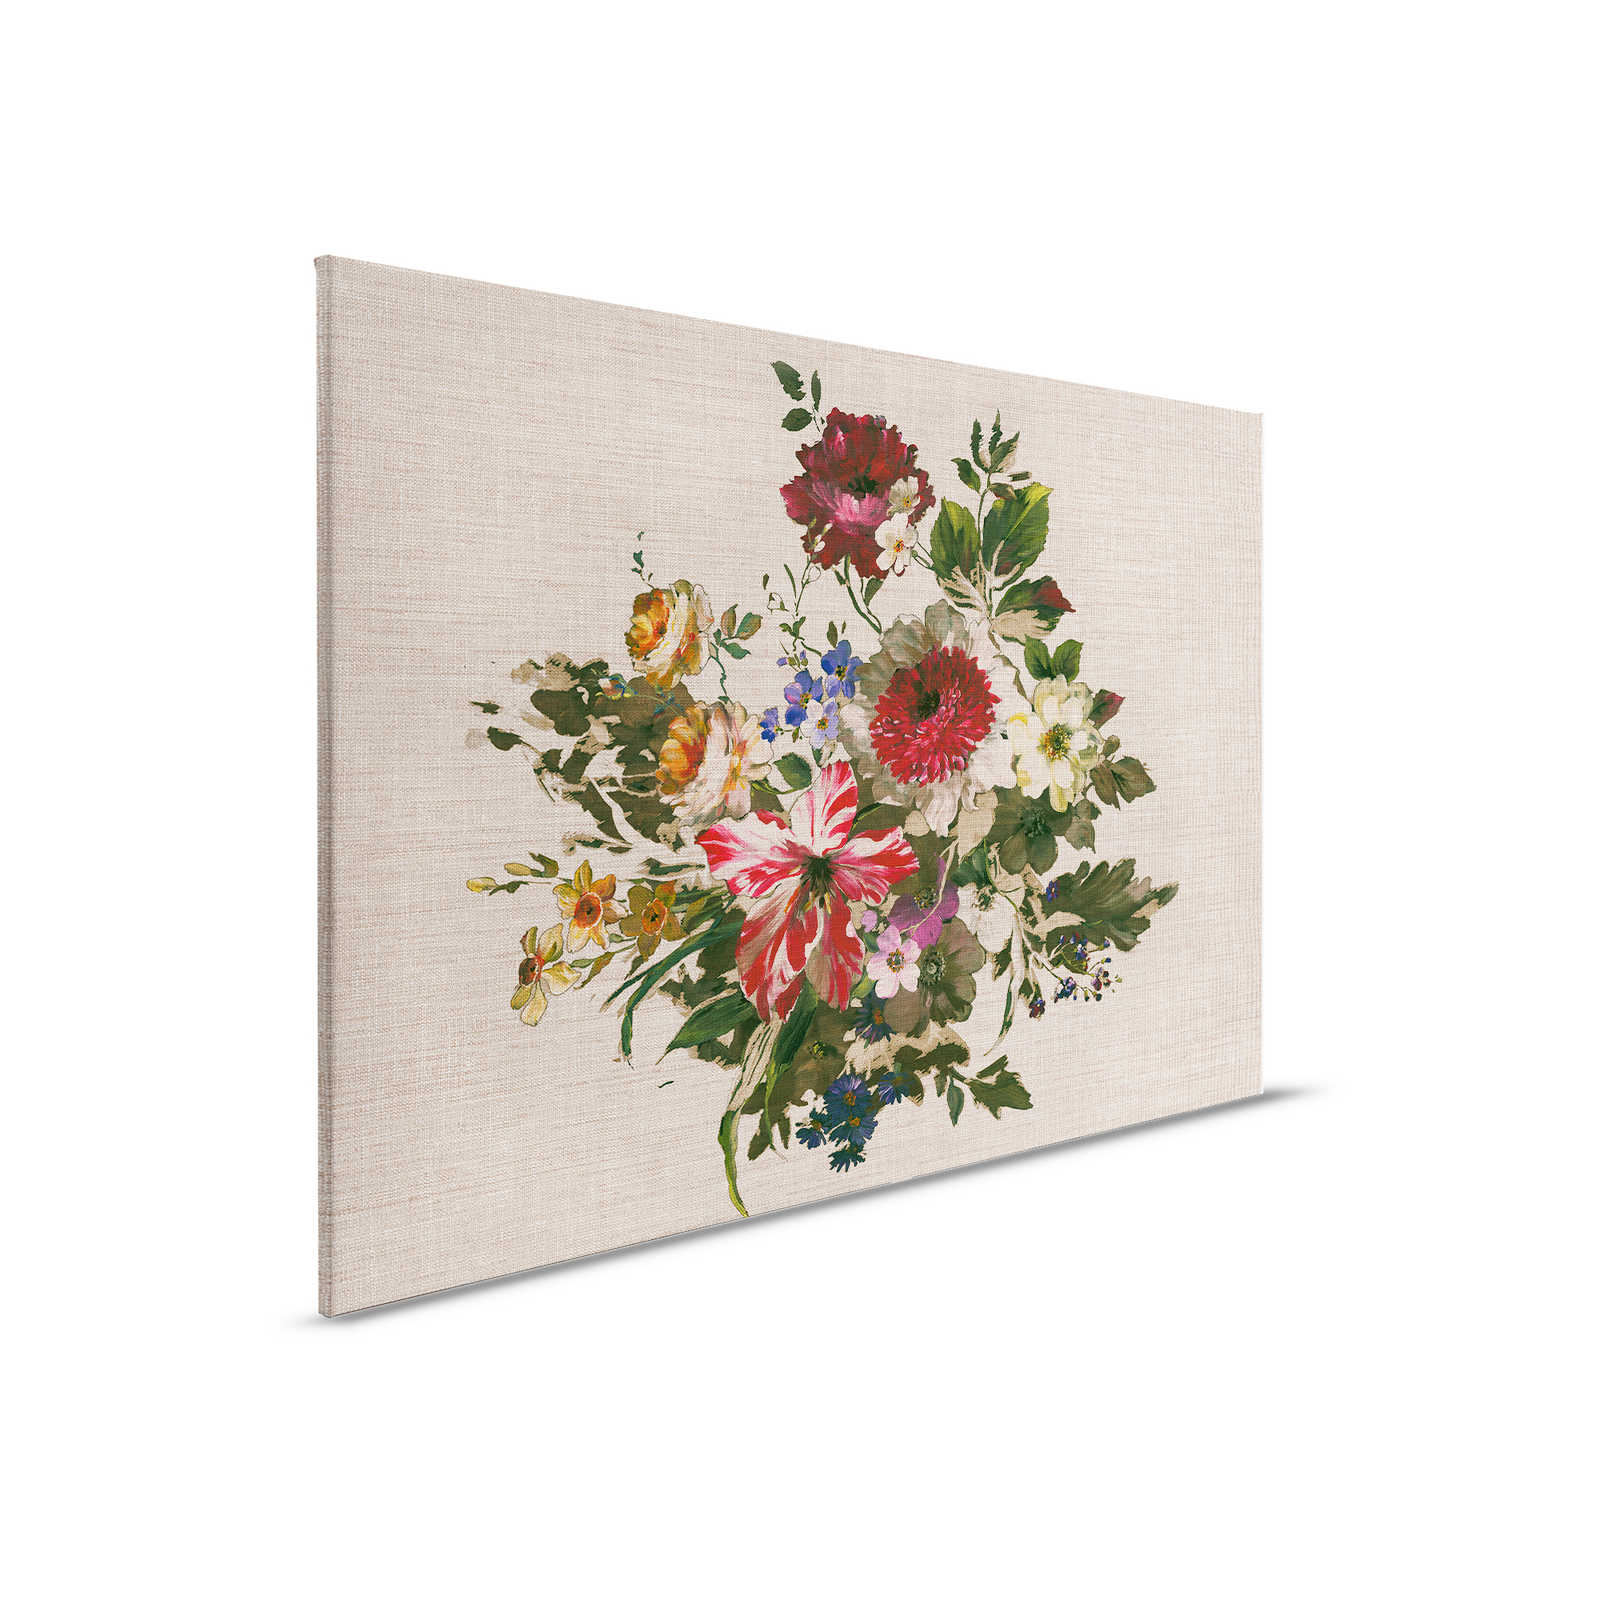 Leinwandbild gemalte Blumen im Vintage Stil & Leinenoptik – 0,90 m x 0,60 m
